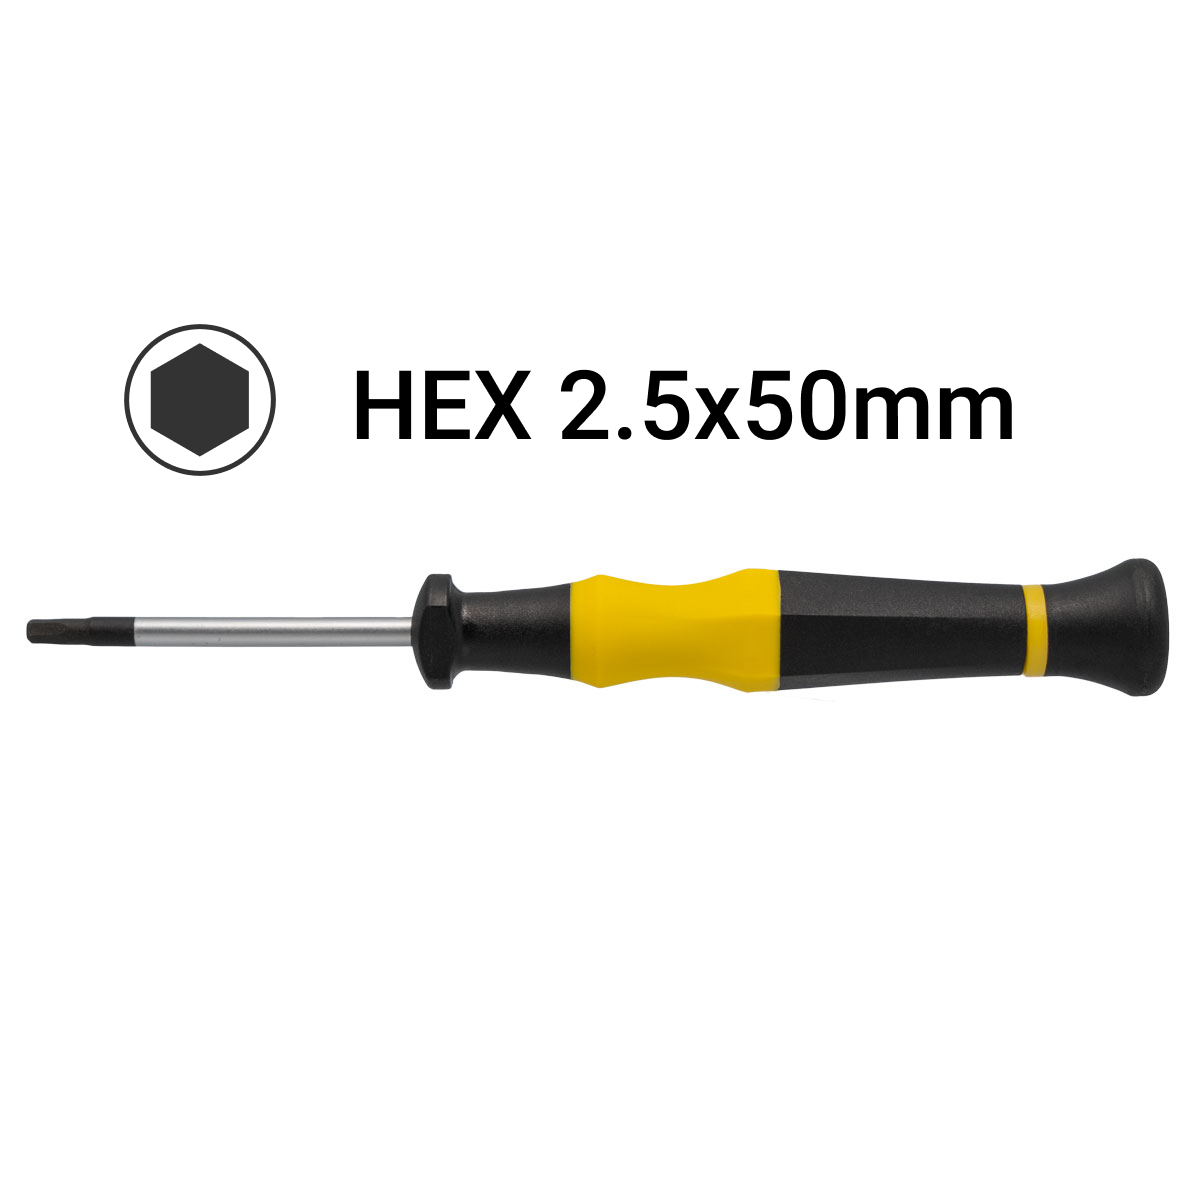 H2.5x50mm Hex Precision Screwdriver